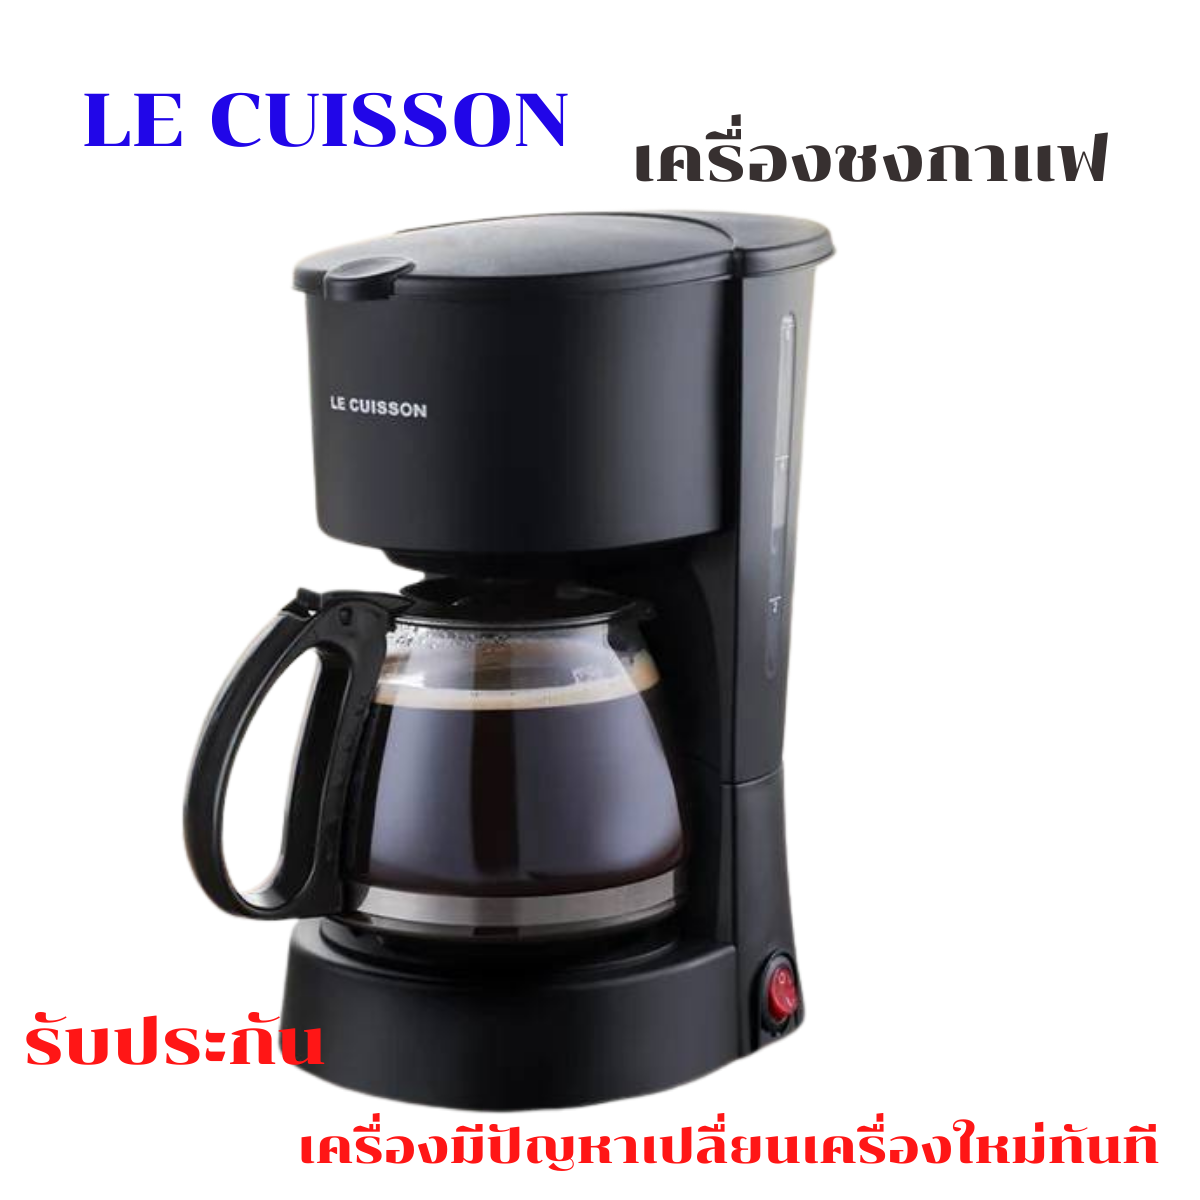 LE CUISSON เครื่องชงกาแฟ เครื่องชงกาแฟอัตโนมัติ ชงได้ 4-6 ถ้วย มีรับประกันเครื่องมีปัญหาเปลื่ยนเครื่งใหม่ทันที